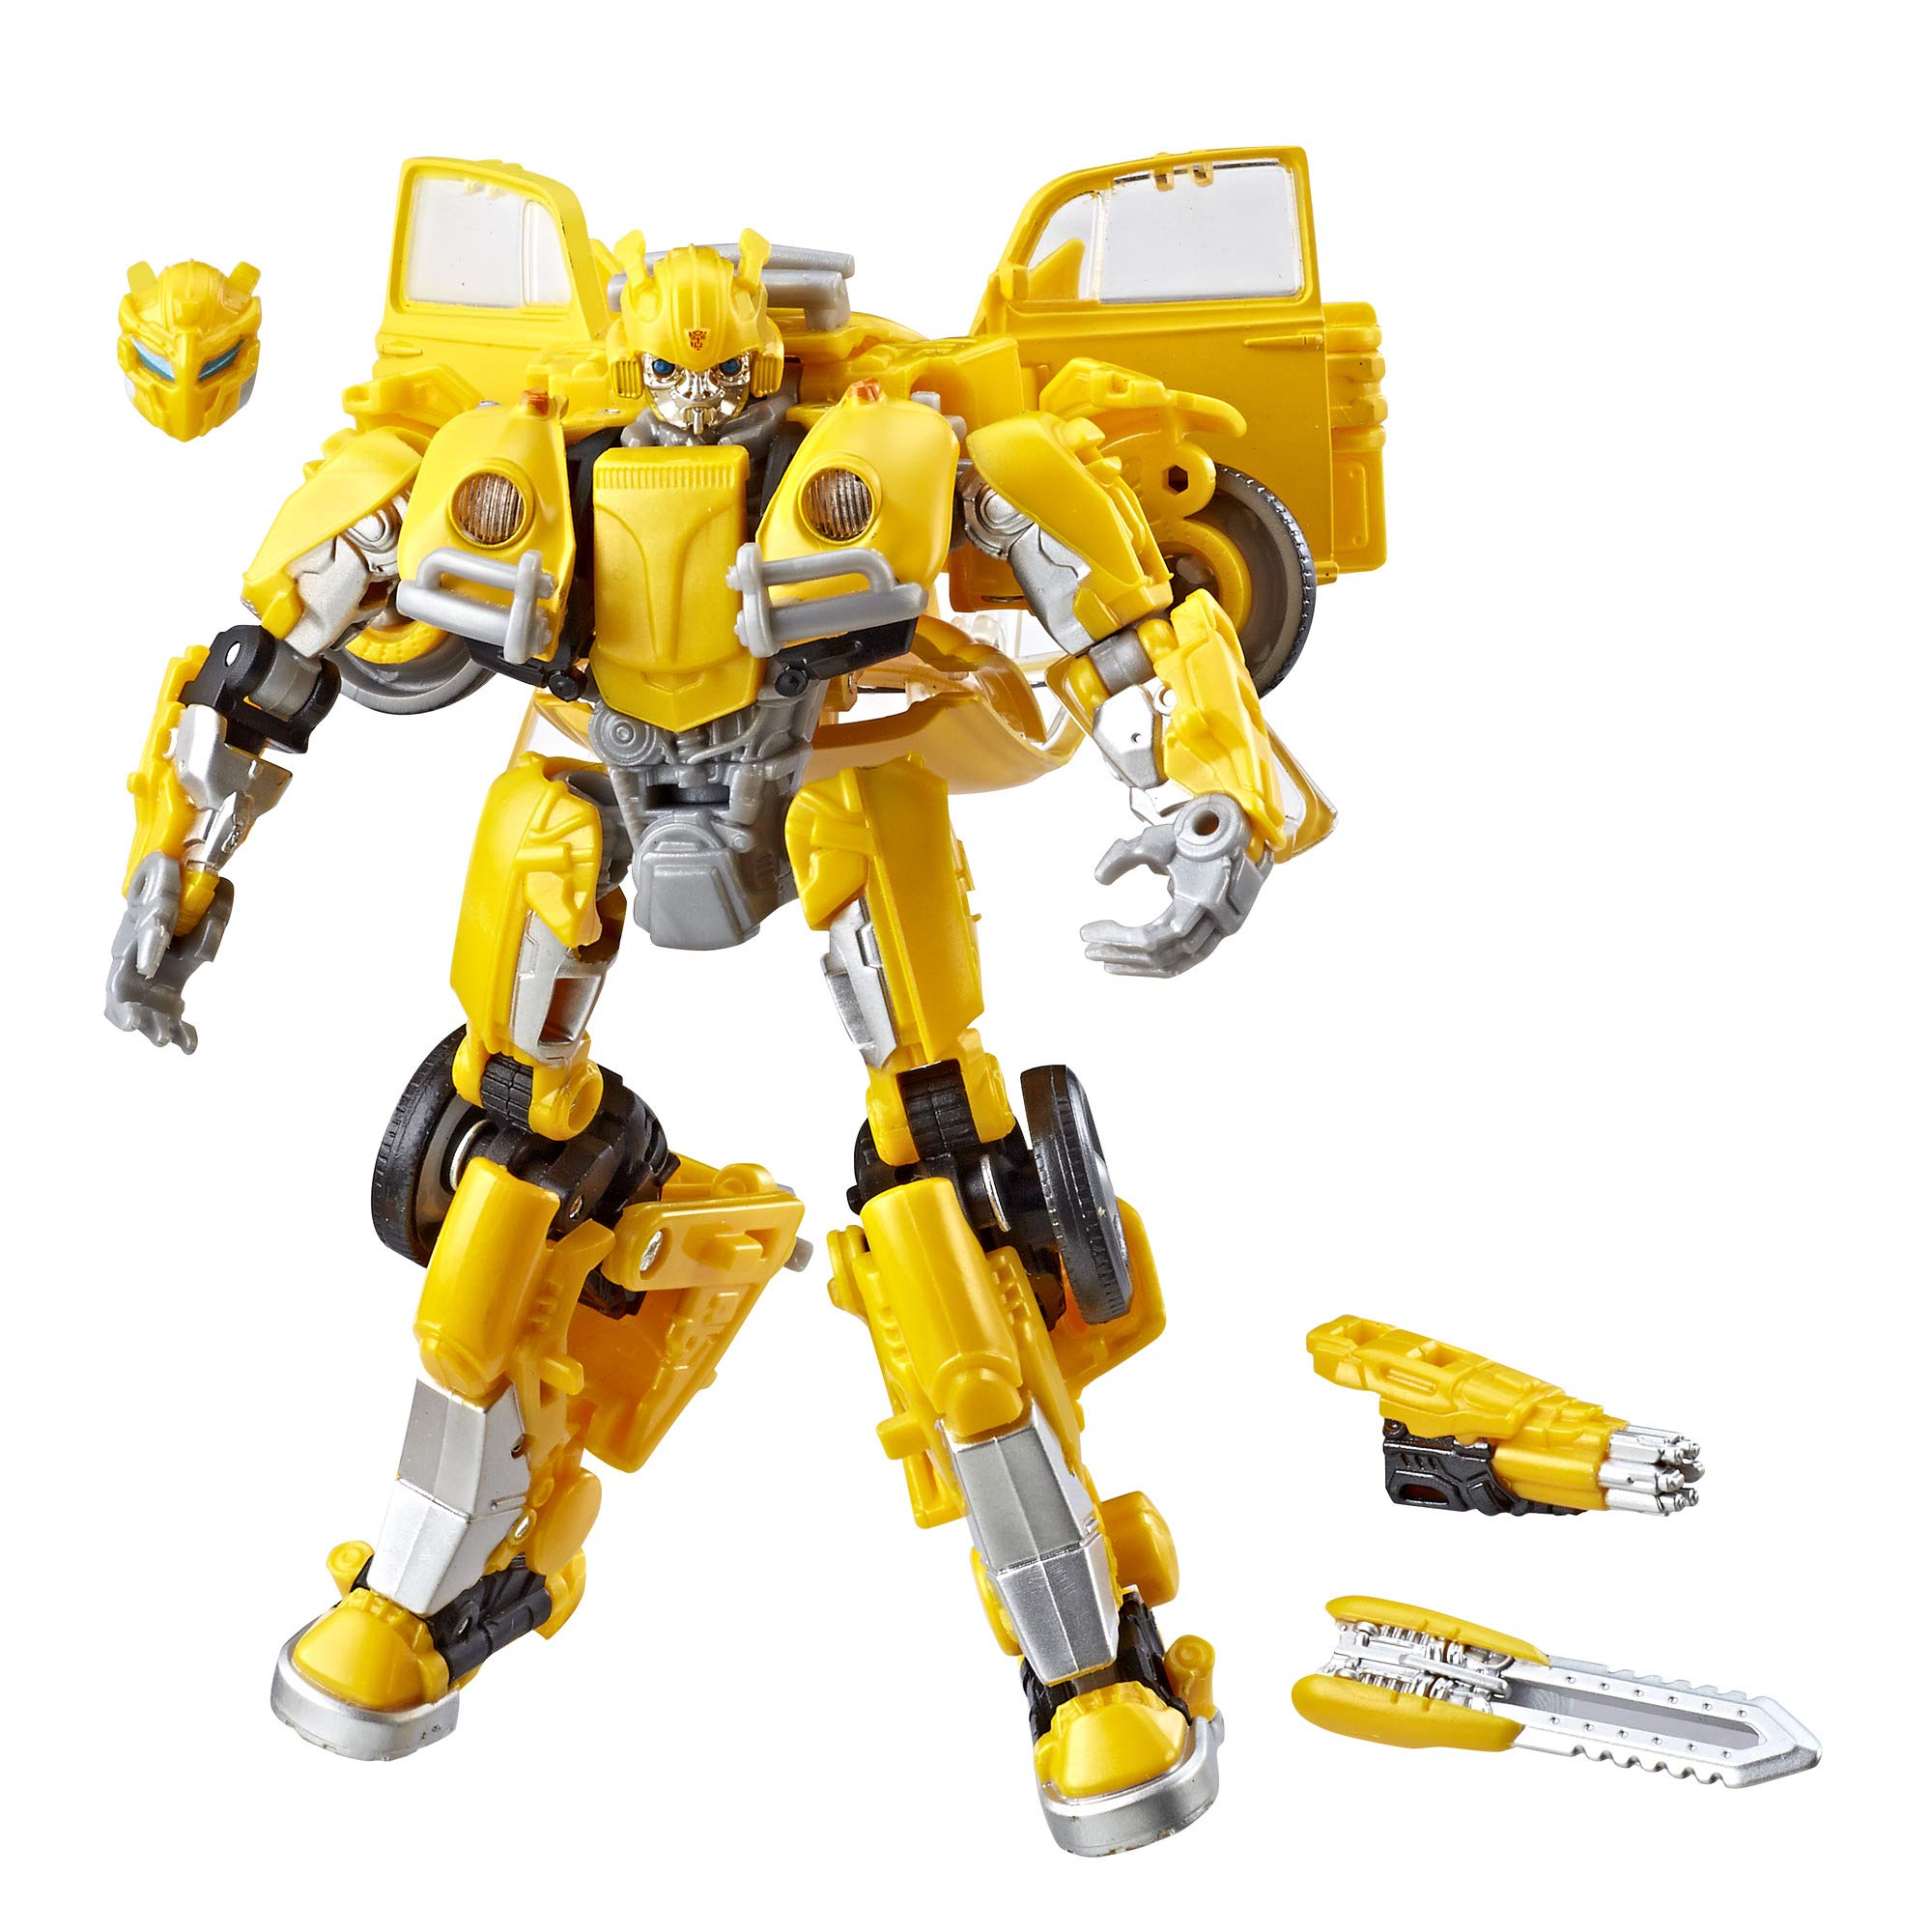 Transformers Studio Series 18 Deluxe Bumblebee - Action Figures, Multicolor